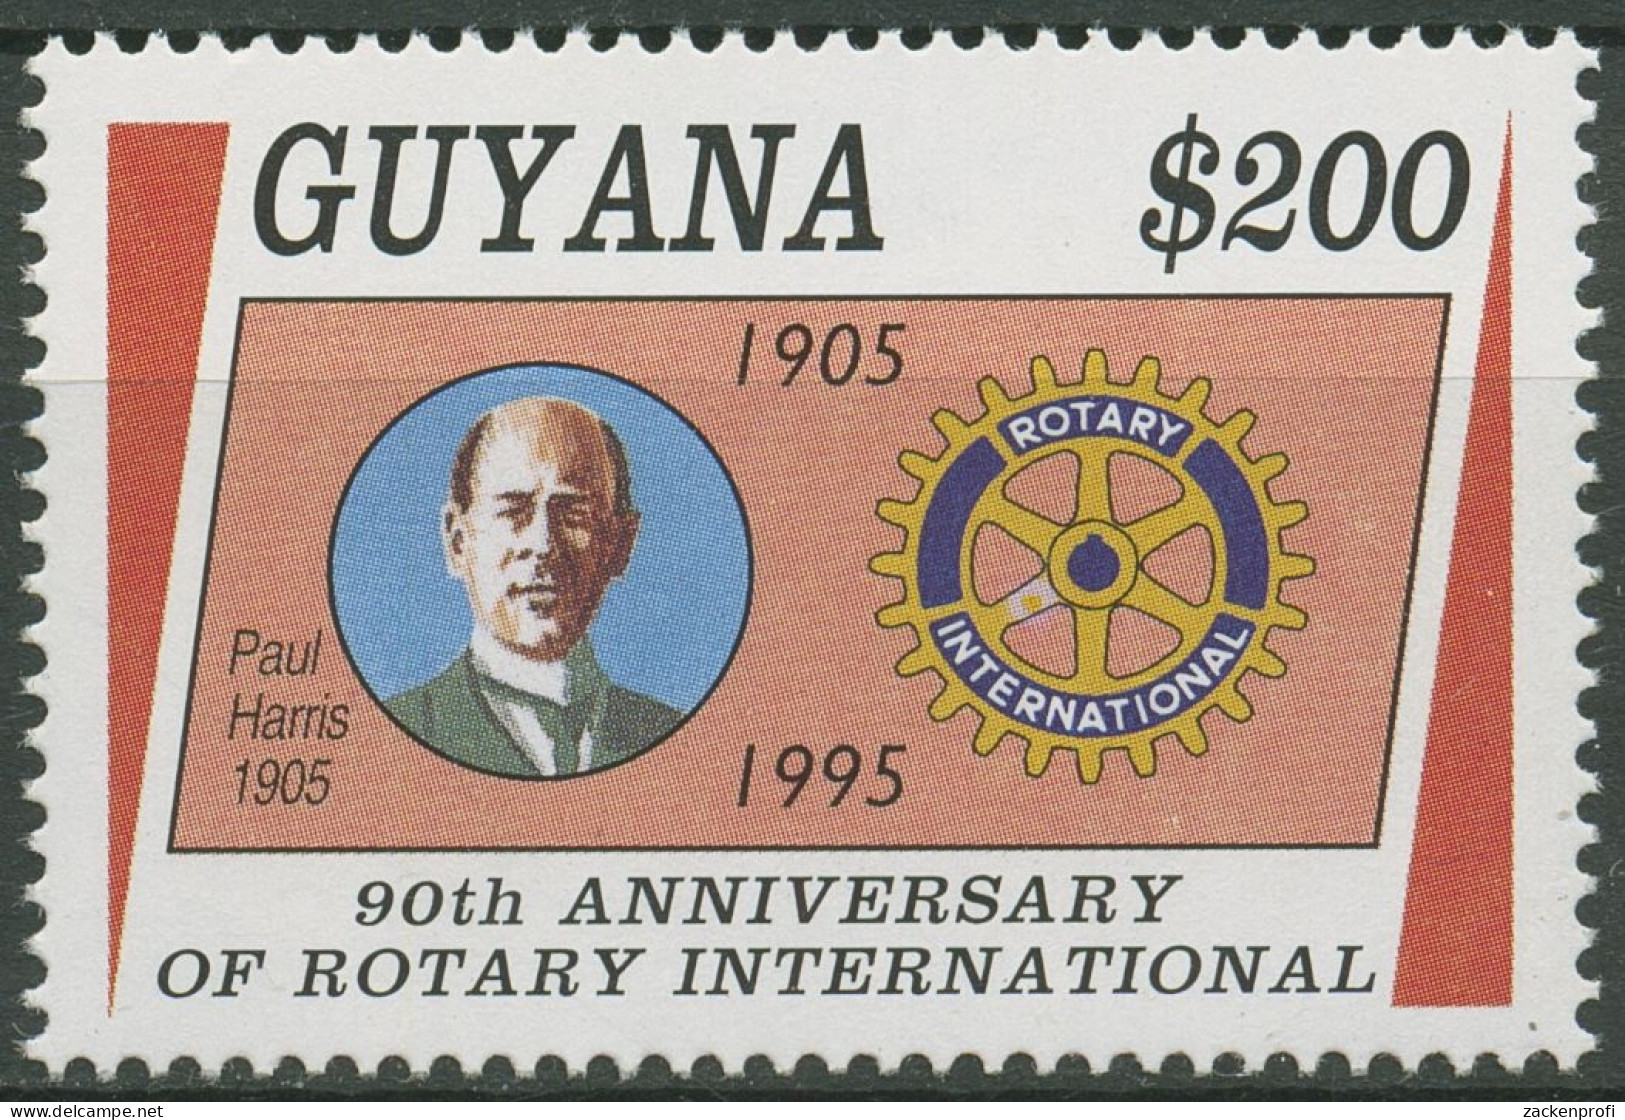 Guyana 1995 Rotary Club International Paul Harris 5216 Postfrisch - Guyana (1966-...)